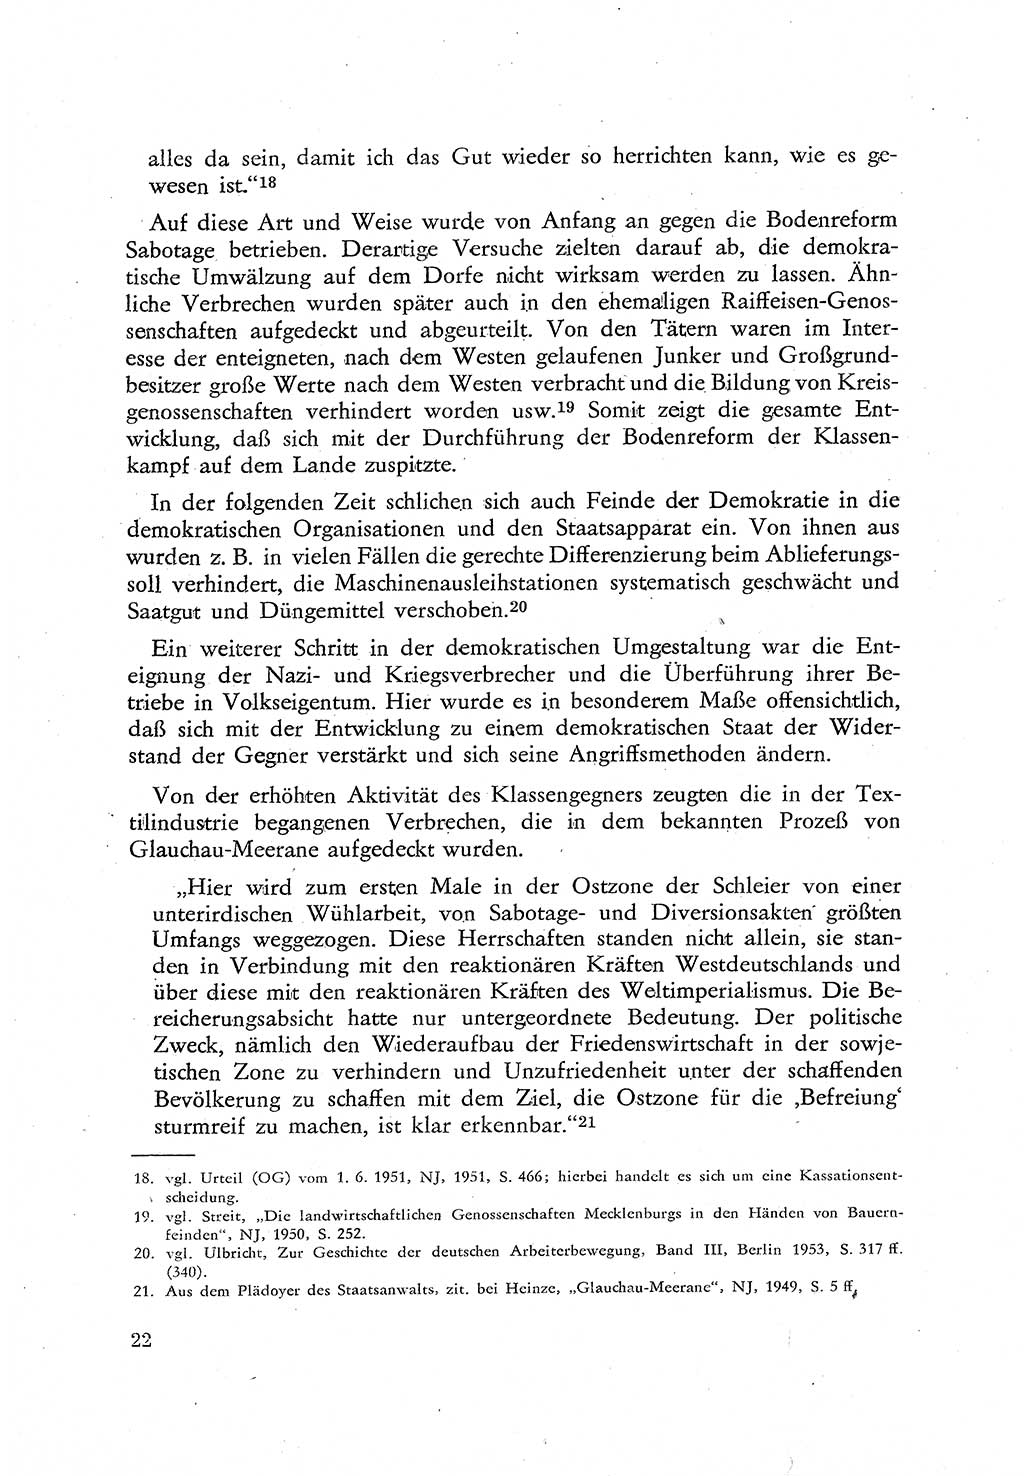 Beiträge zum Strafrecht [Deutsche Demokratische Republik (DDR)], Staatsverbrechen 1959, Seite 22 (Beitr. Strafr. DDR St.-Verbr. 1959, S. 22)